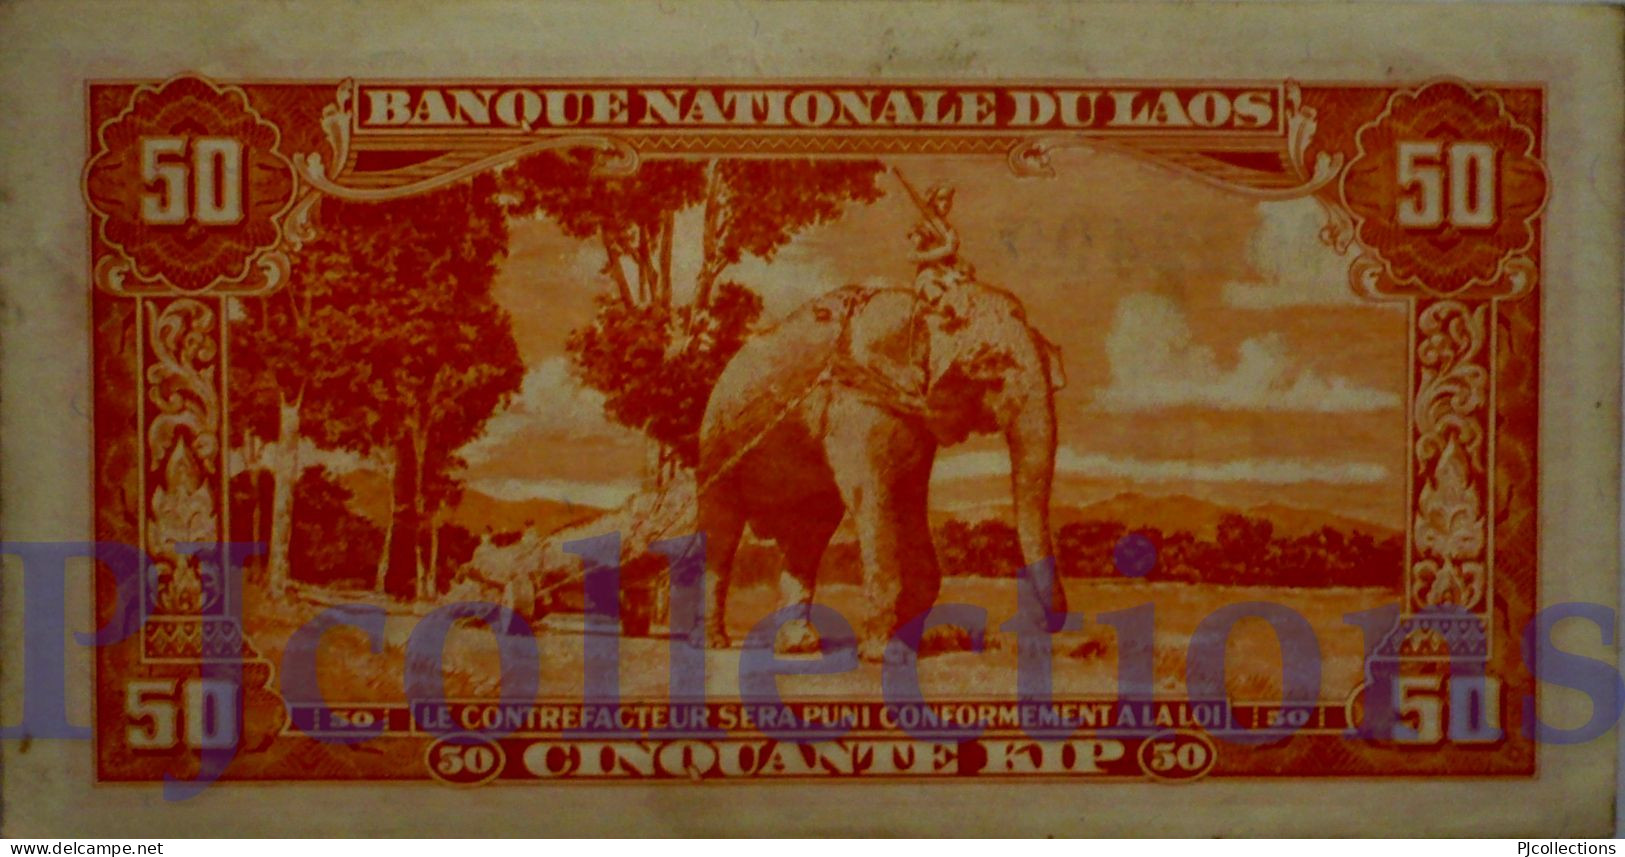 LAOS 50 KIP 1957 PICK 5b AU - Laos